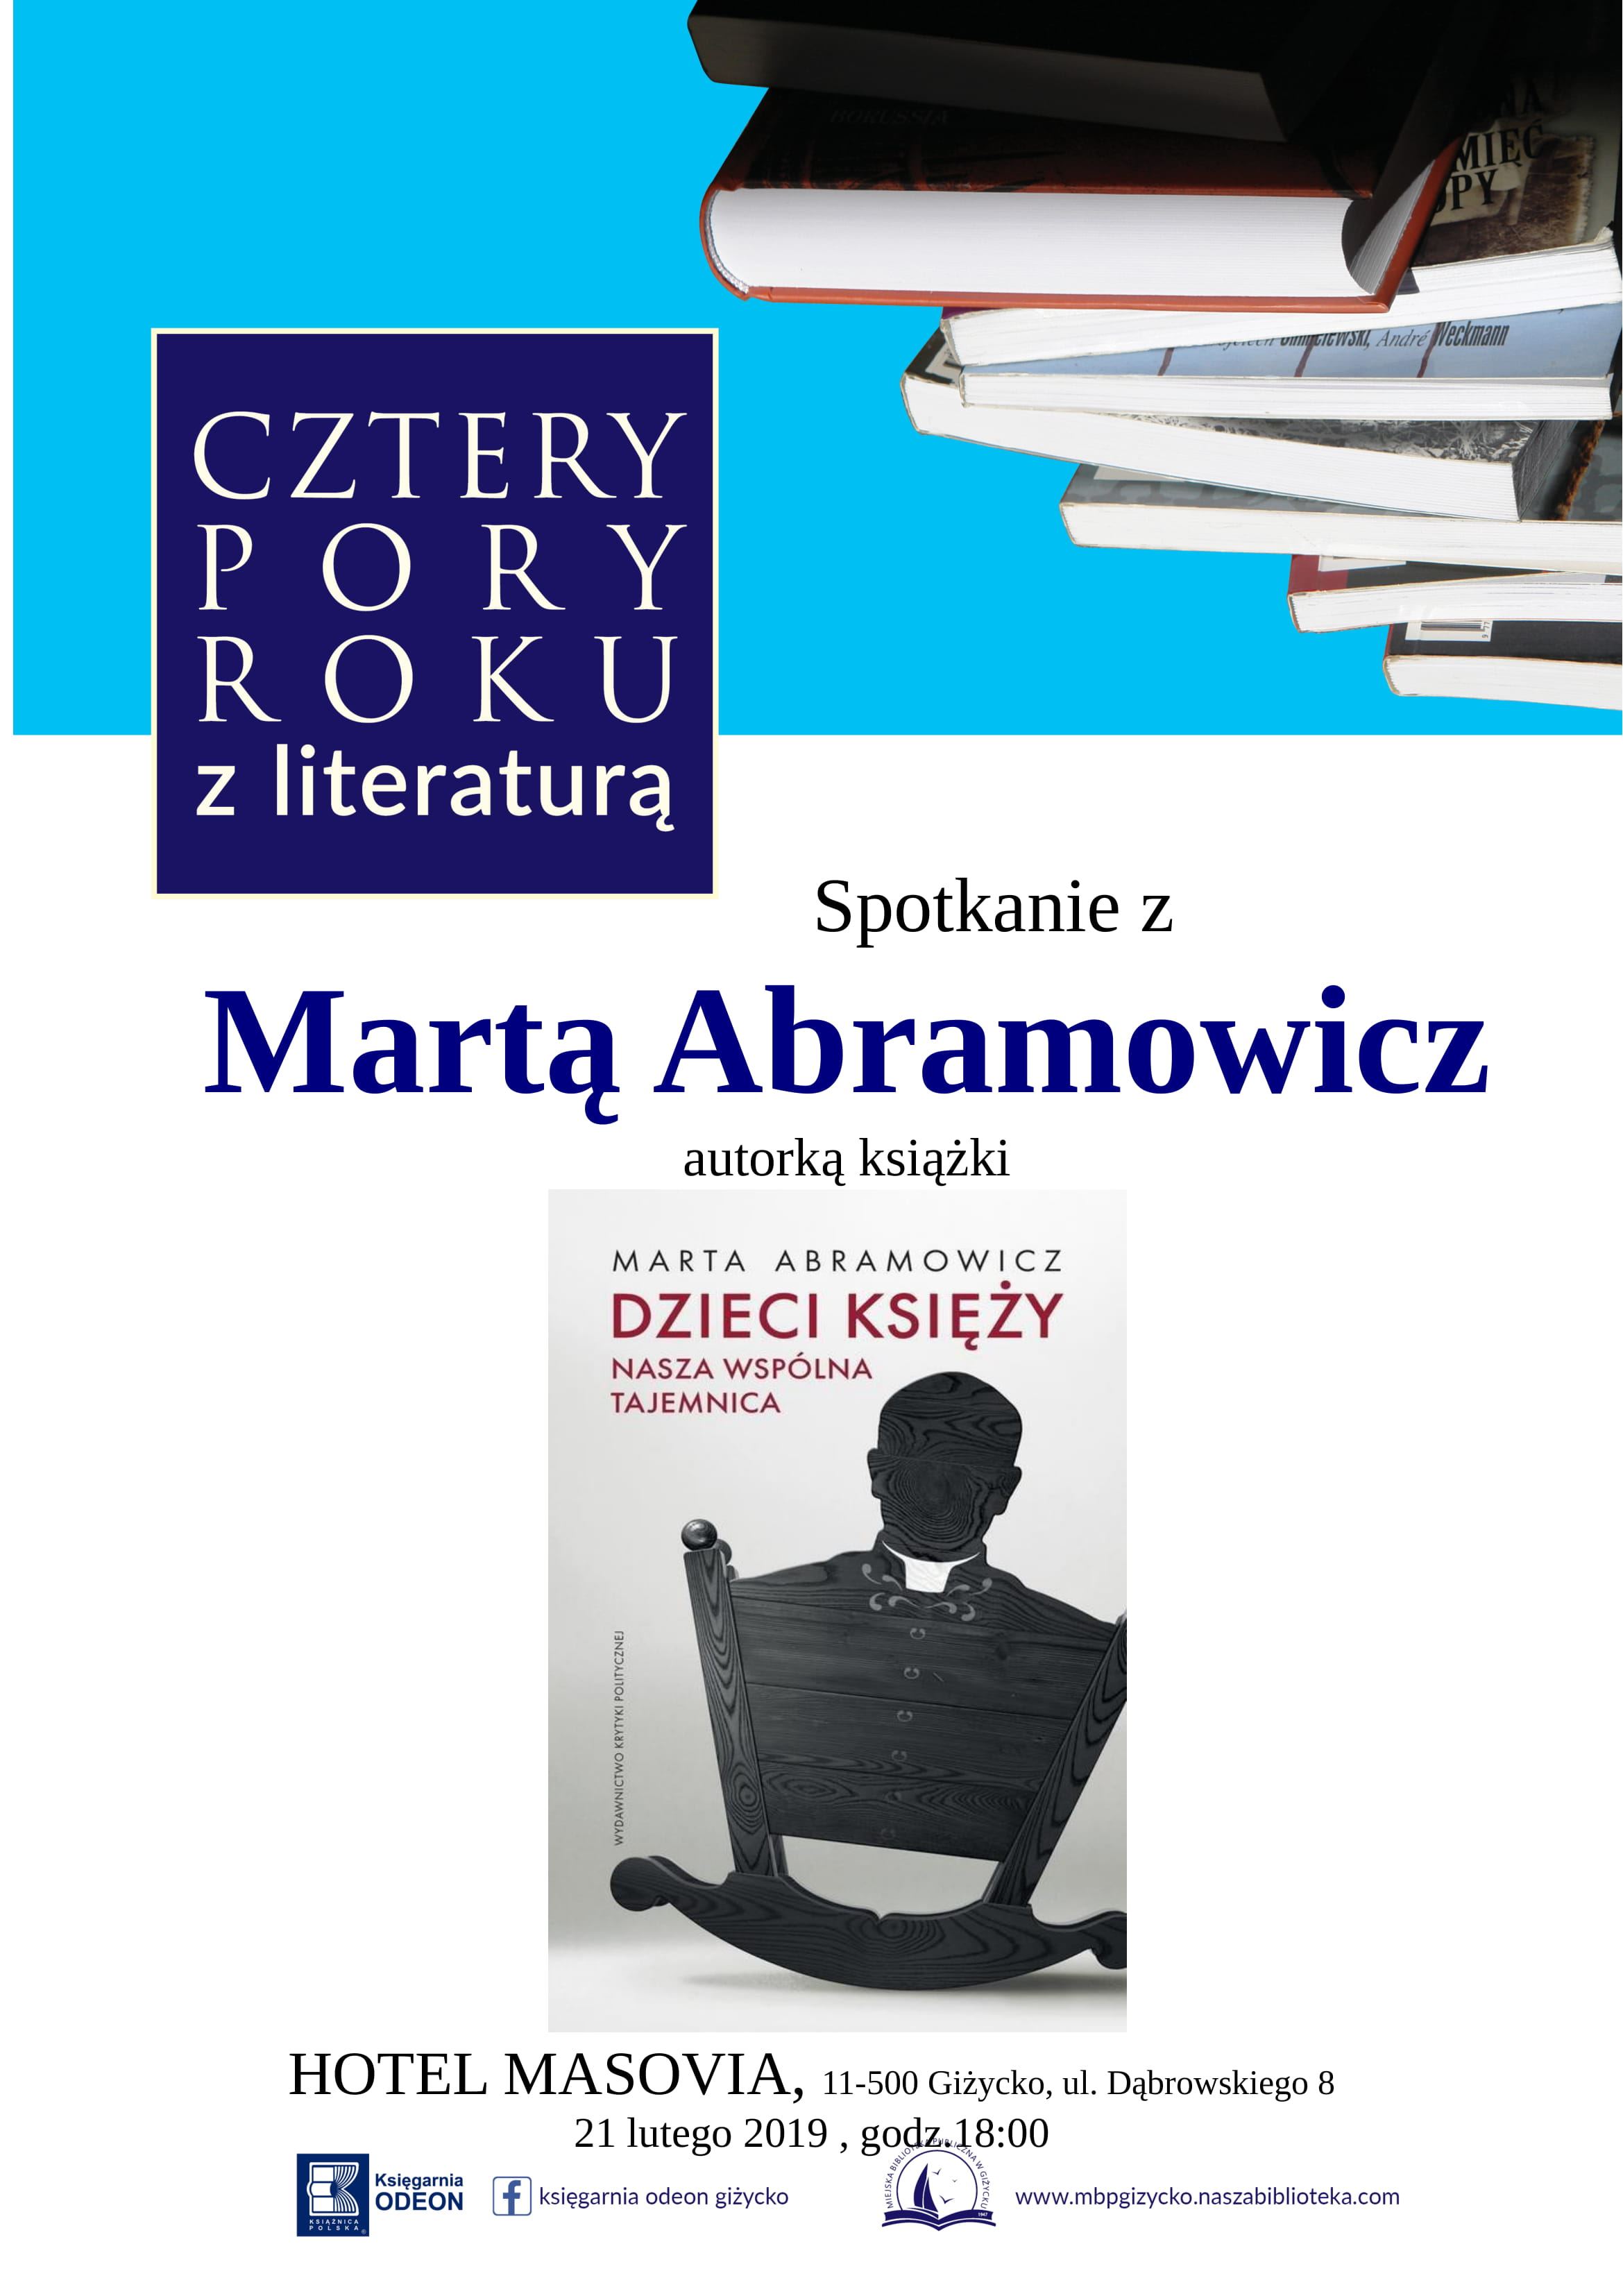 Spotkanie literackie z Martą Abramowicz